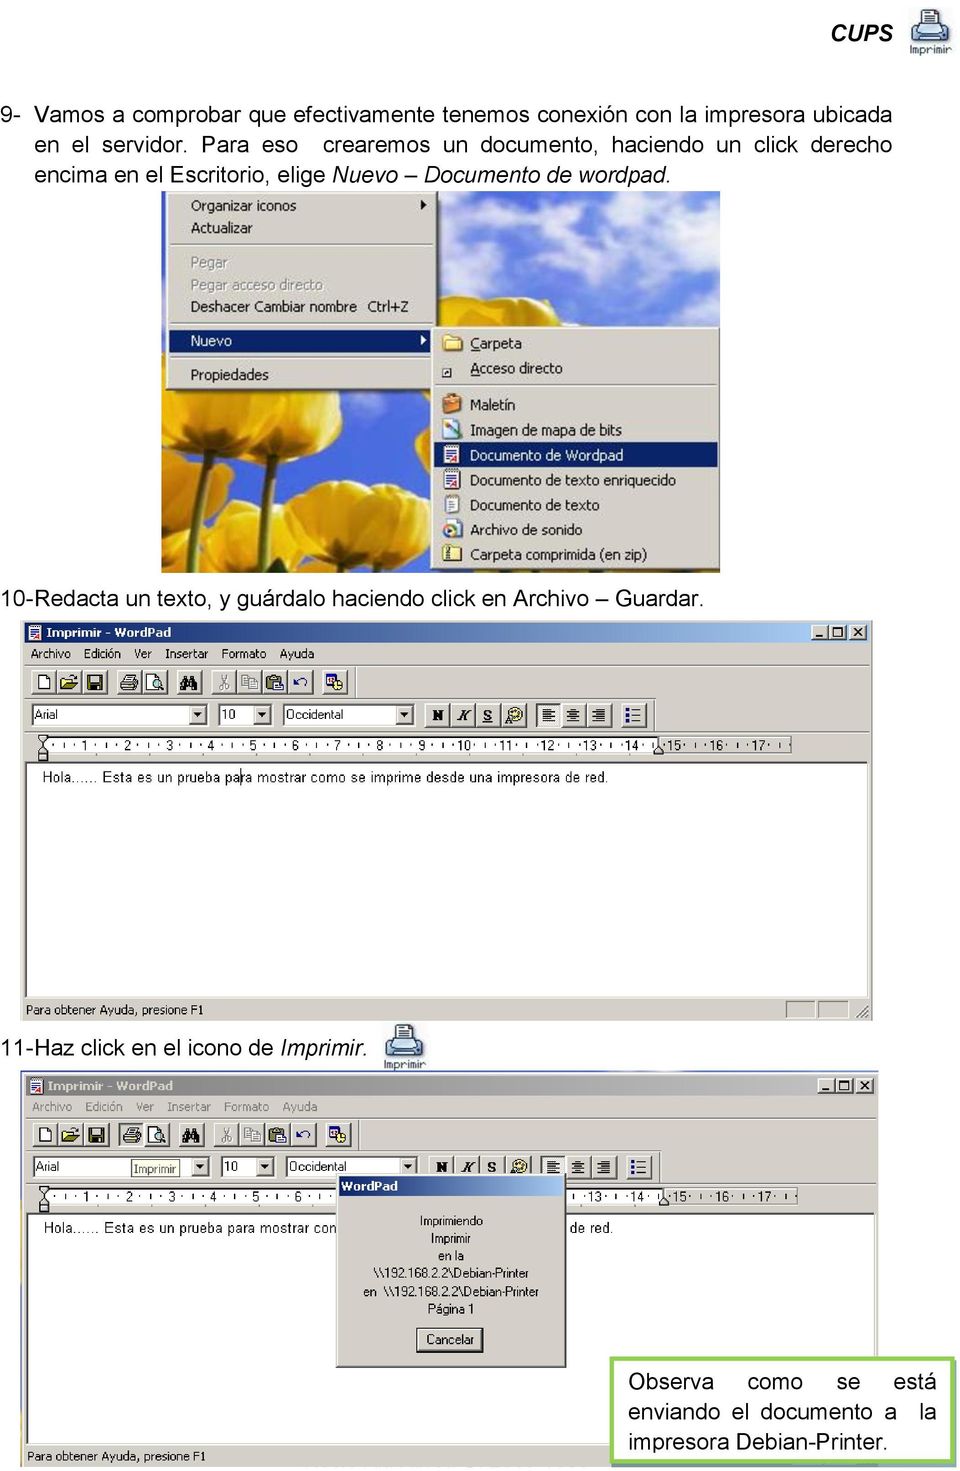 Documento de wordpad. 10- Redacta un texto, y guárdalo haciendo click en Archivo Guardar.